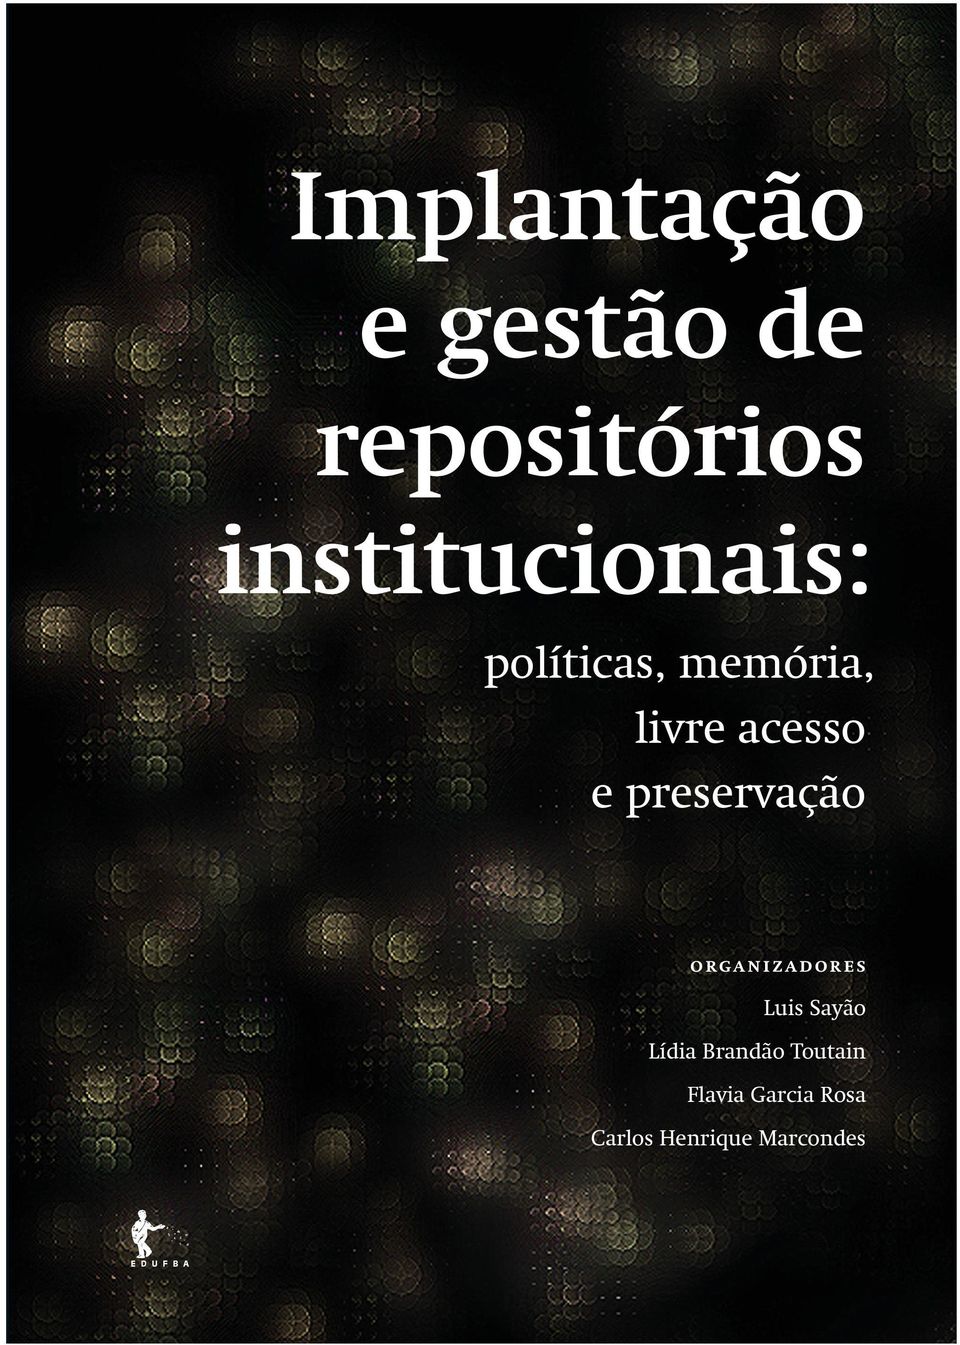 LIDIA MARIA BATISTA BRANDAO TOUTAIN é doutora em Filosofia pela Universidad de León - España (2003), en el programa de Comunicación, Acción y Conocimiento.